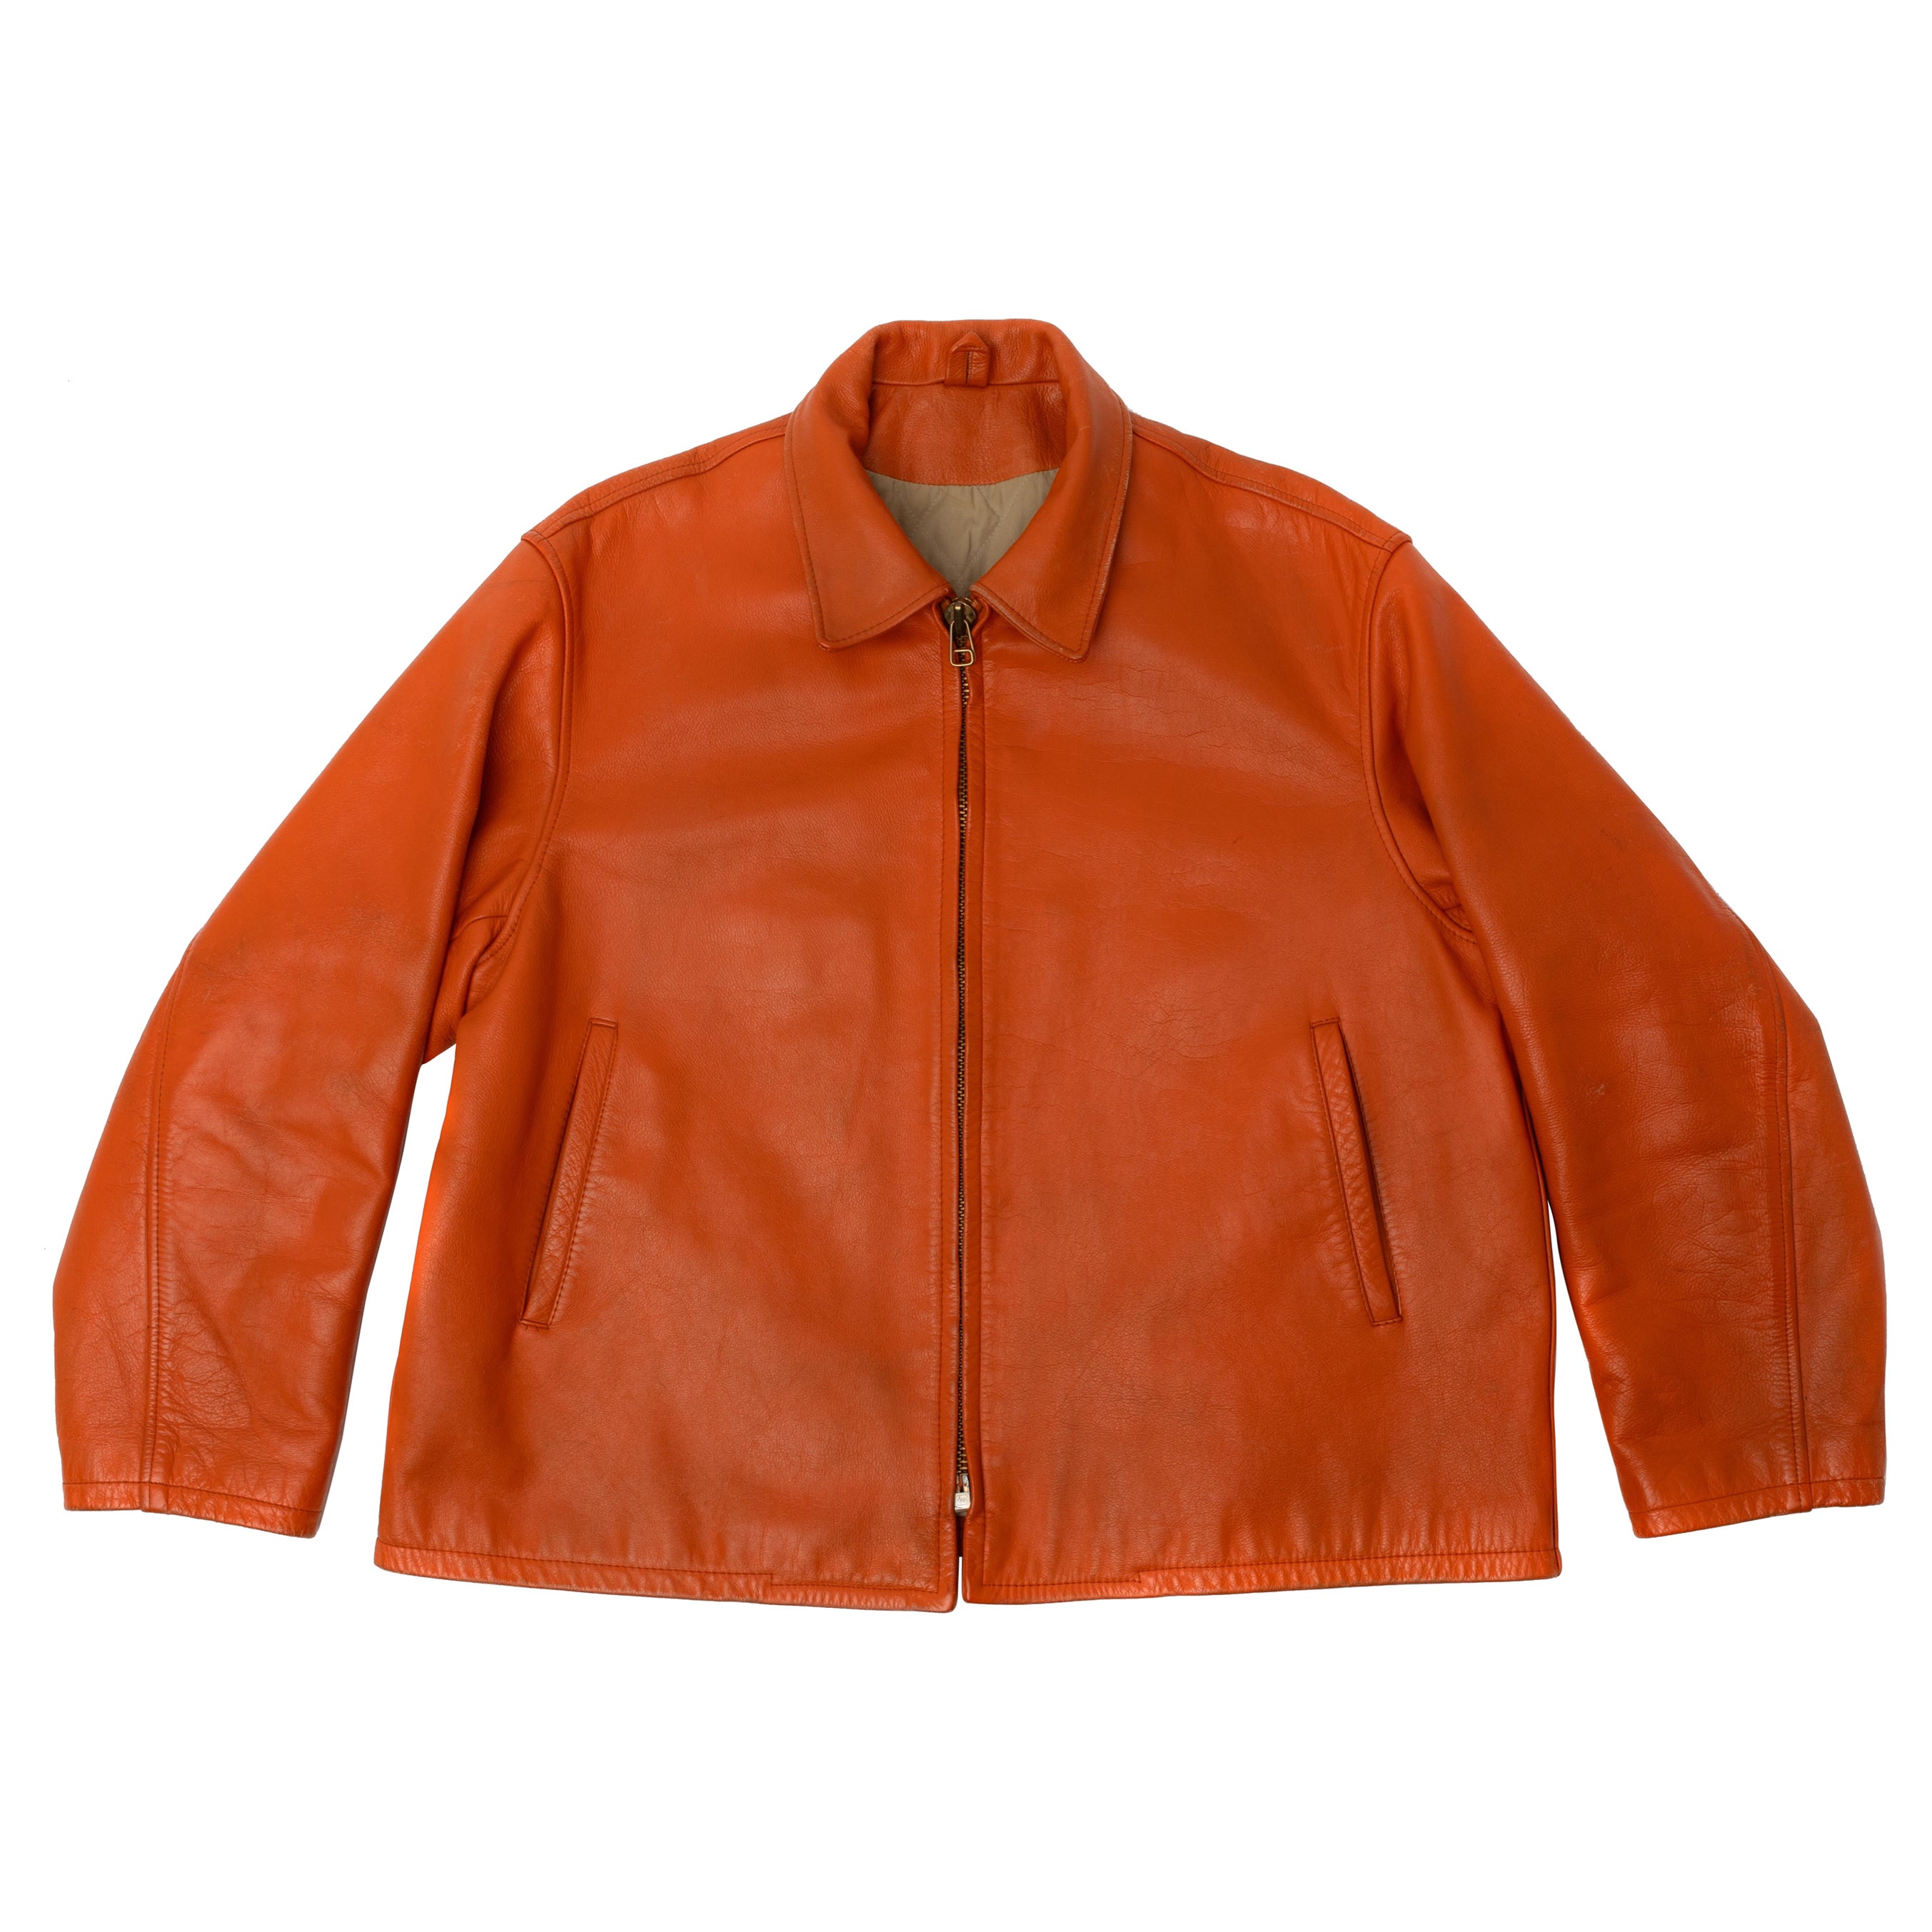 Yohji Yamamoto Orange Leather Jacket 1991 AW '6・1 THE MEN'